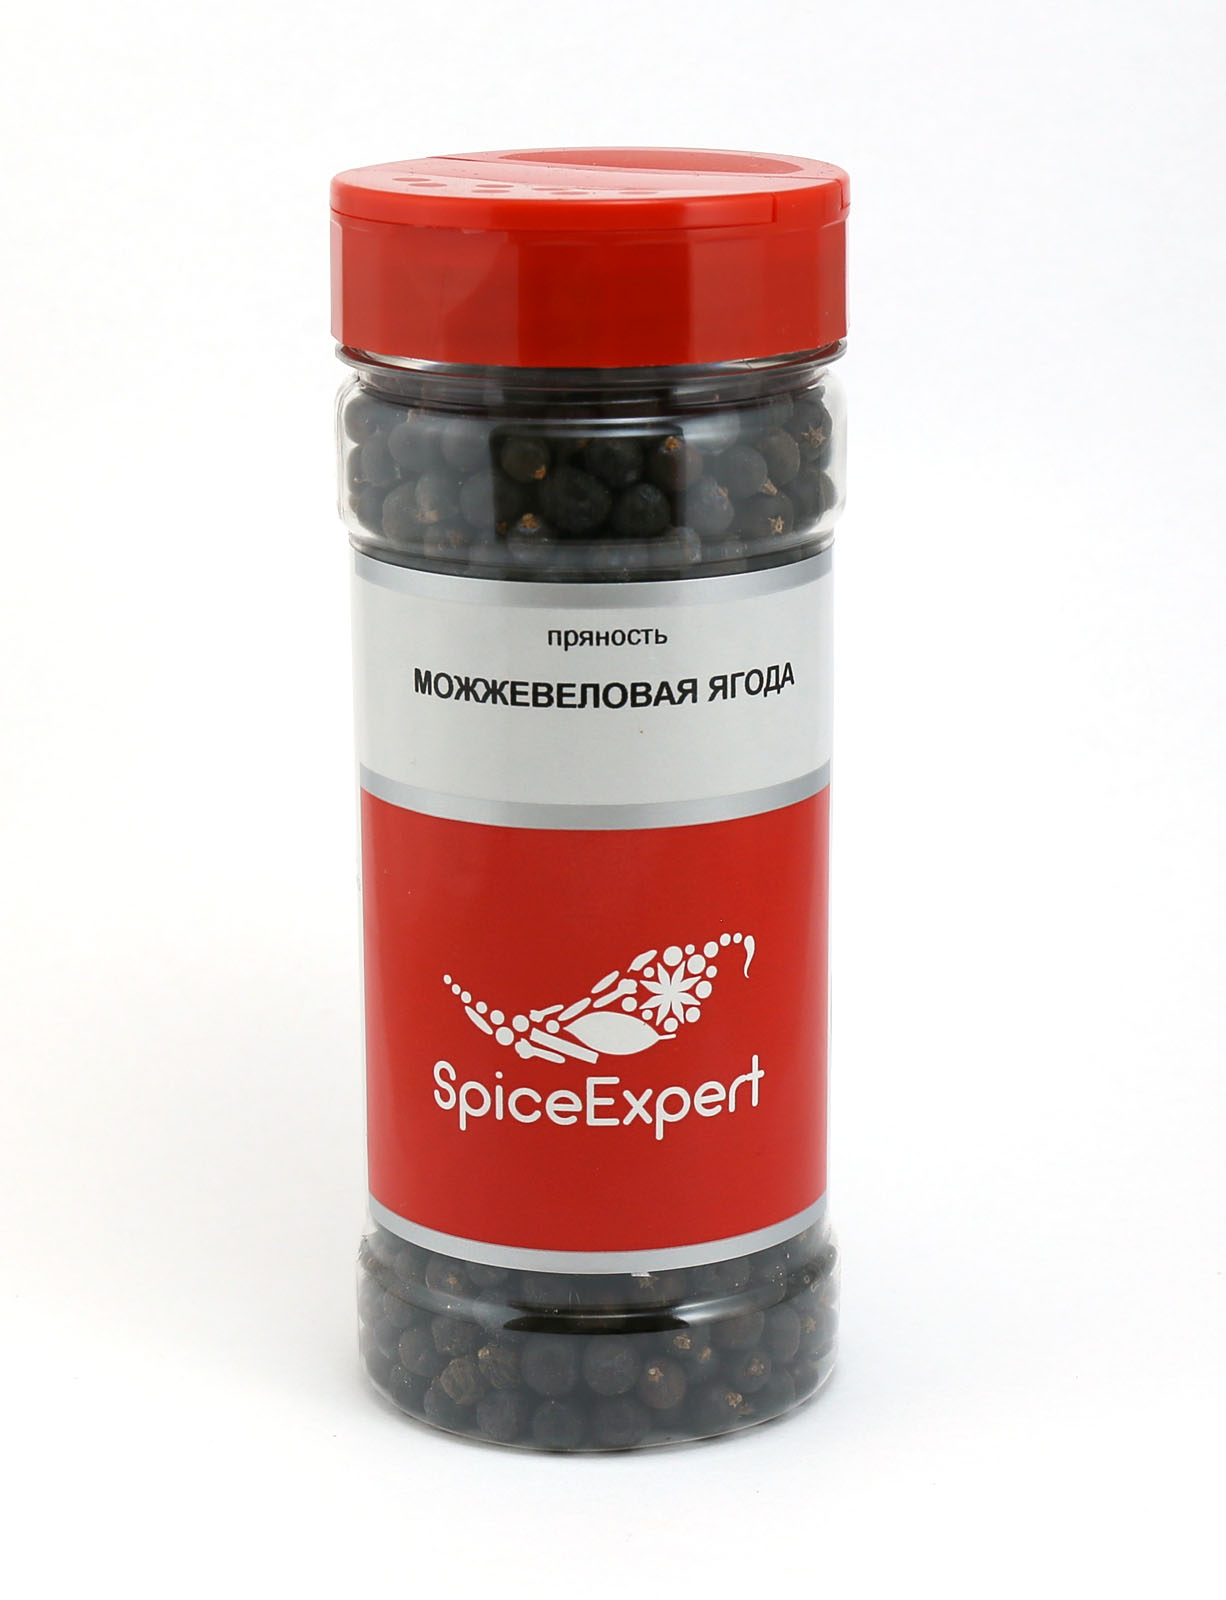 Можжевеловая ягода SpiceExpert 125 г